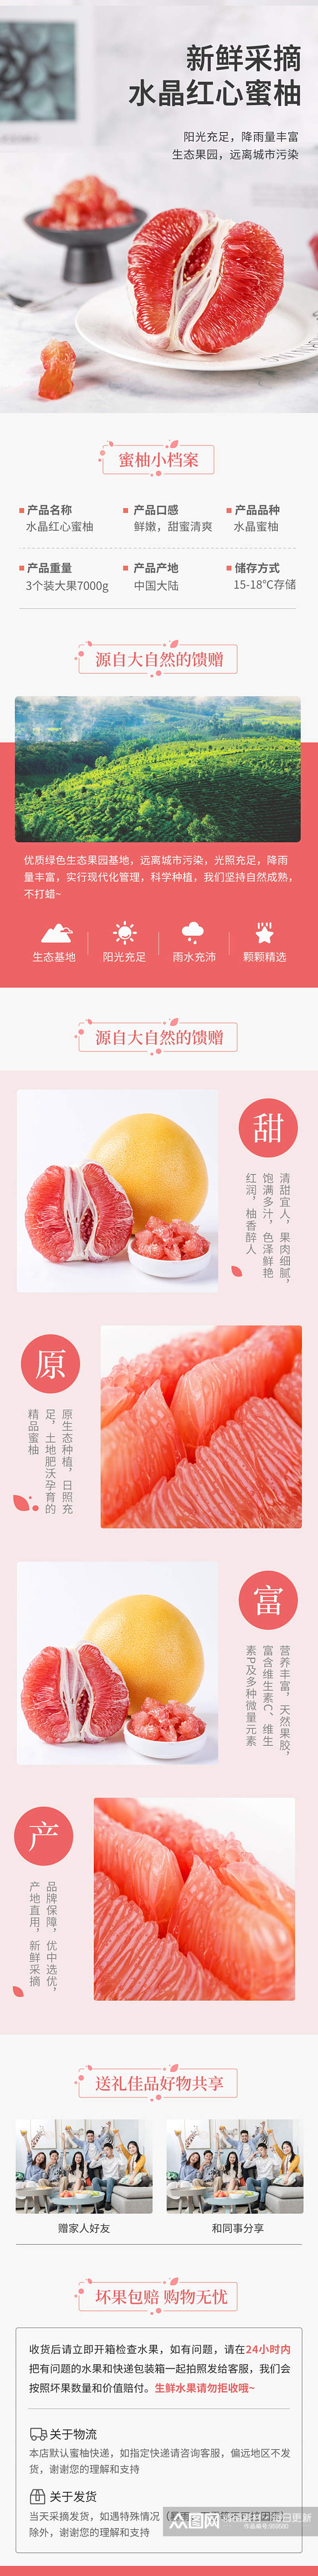 水果详情页红心柚子简约风格素材